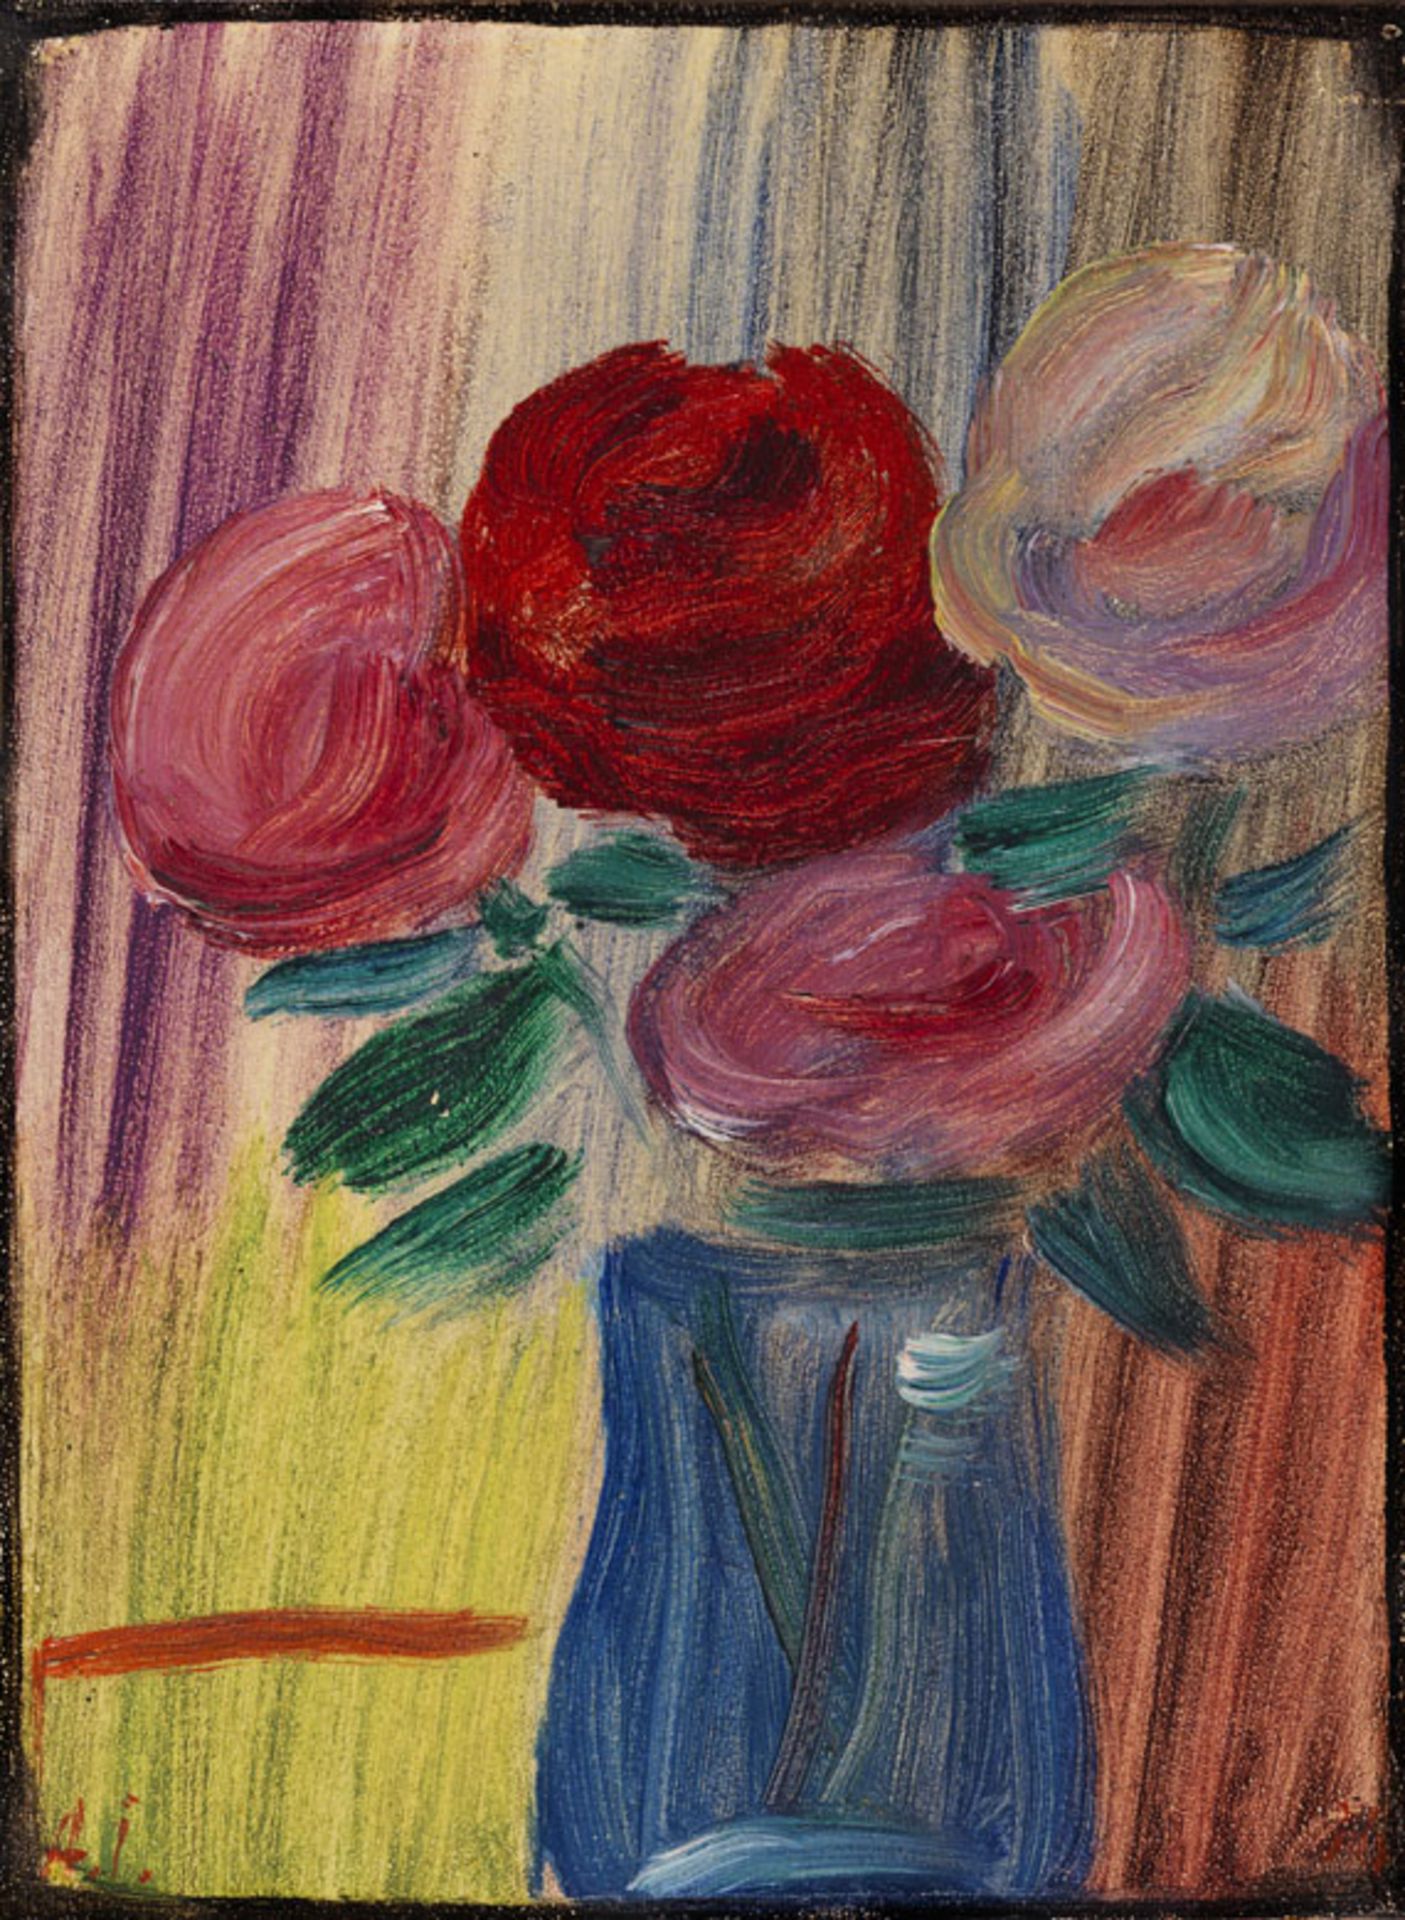 Alexej von Jawlensky 1864 Torschok - 1941 Wiesbaden Stillleben: Blumen in blauer Vase. 1936. Öl